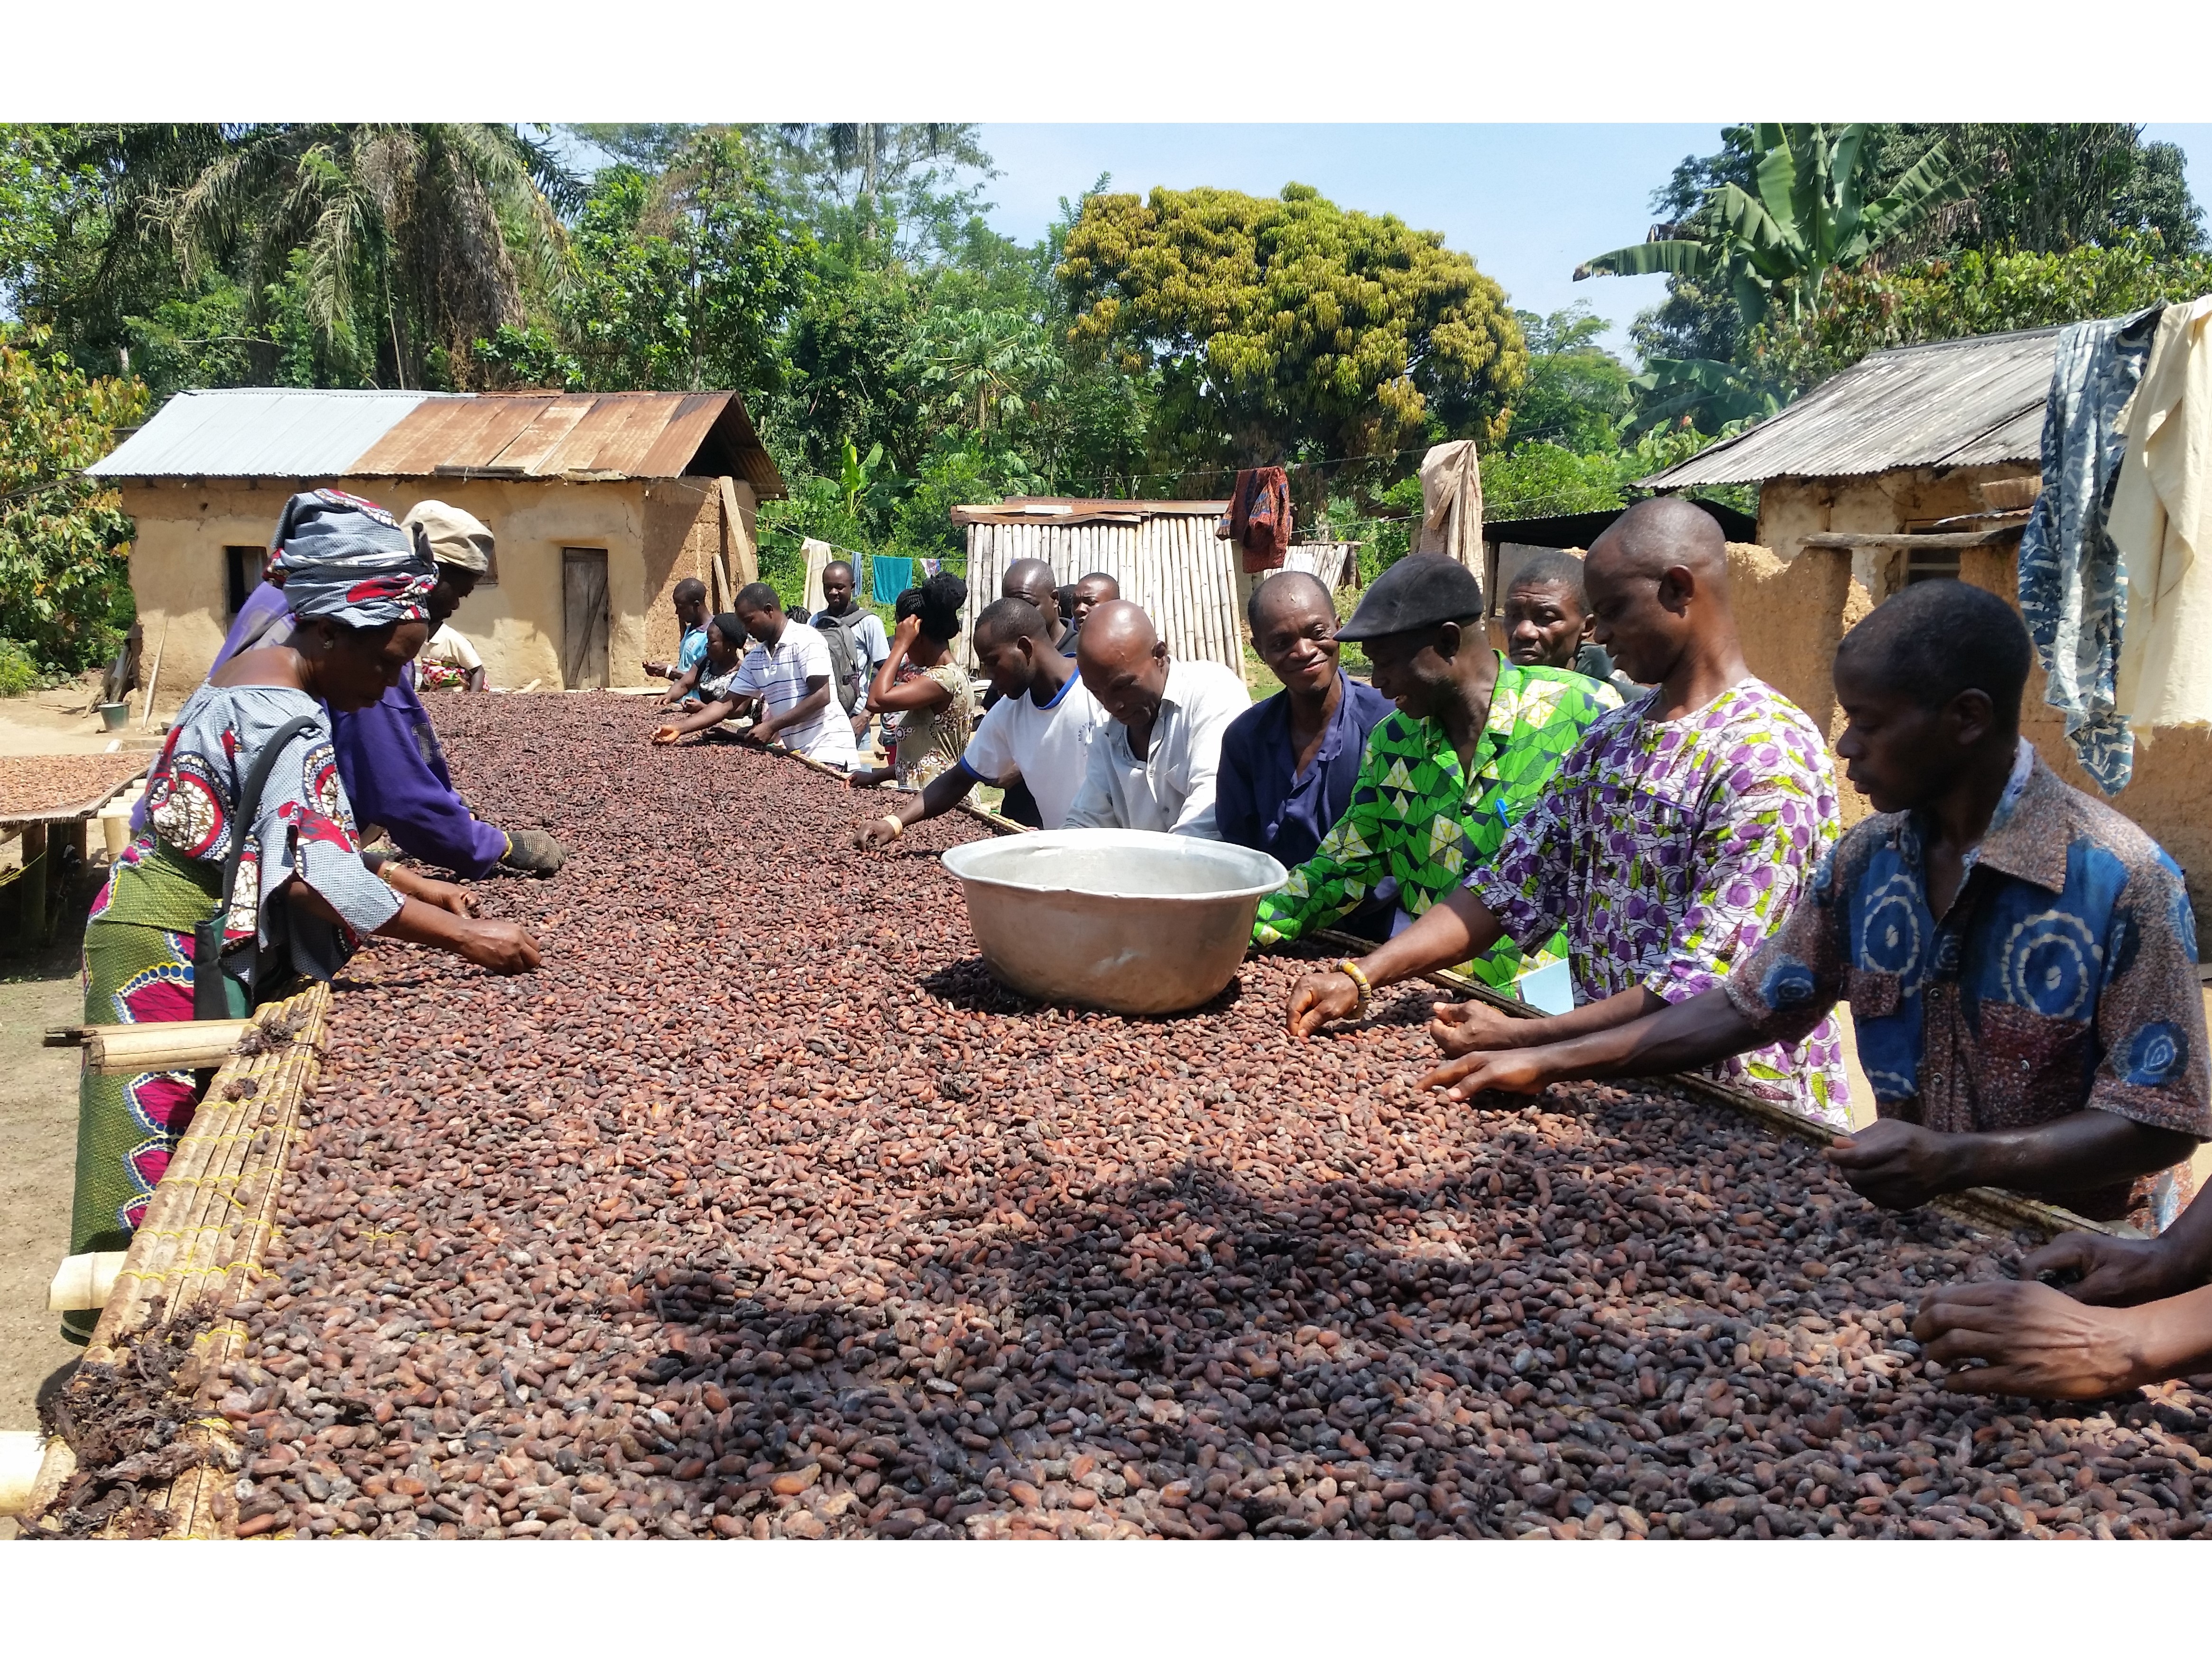 Nach der Fermentation trocknen die Kakaobohnen an der Sonne. Um Schimmel und Befall zu verhindern, müssen Produzent:innen die Bohnen in dieser Phase regelmässig prüfen und wenden.